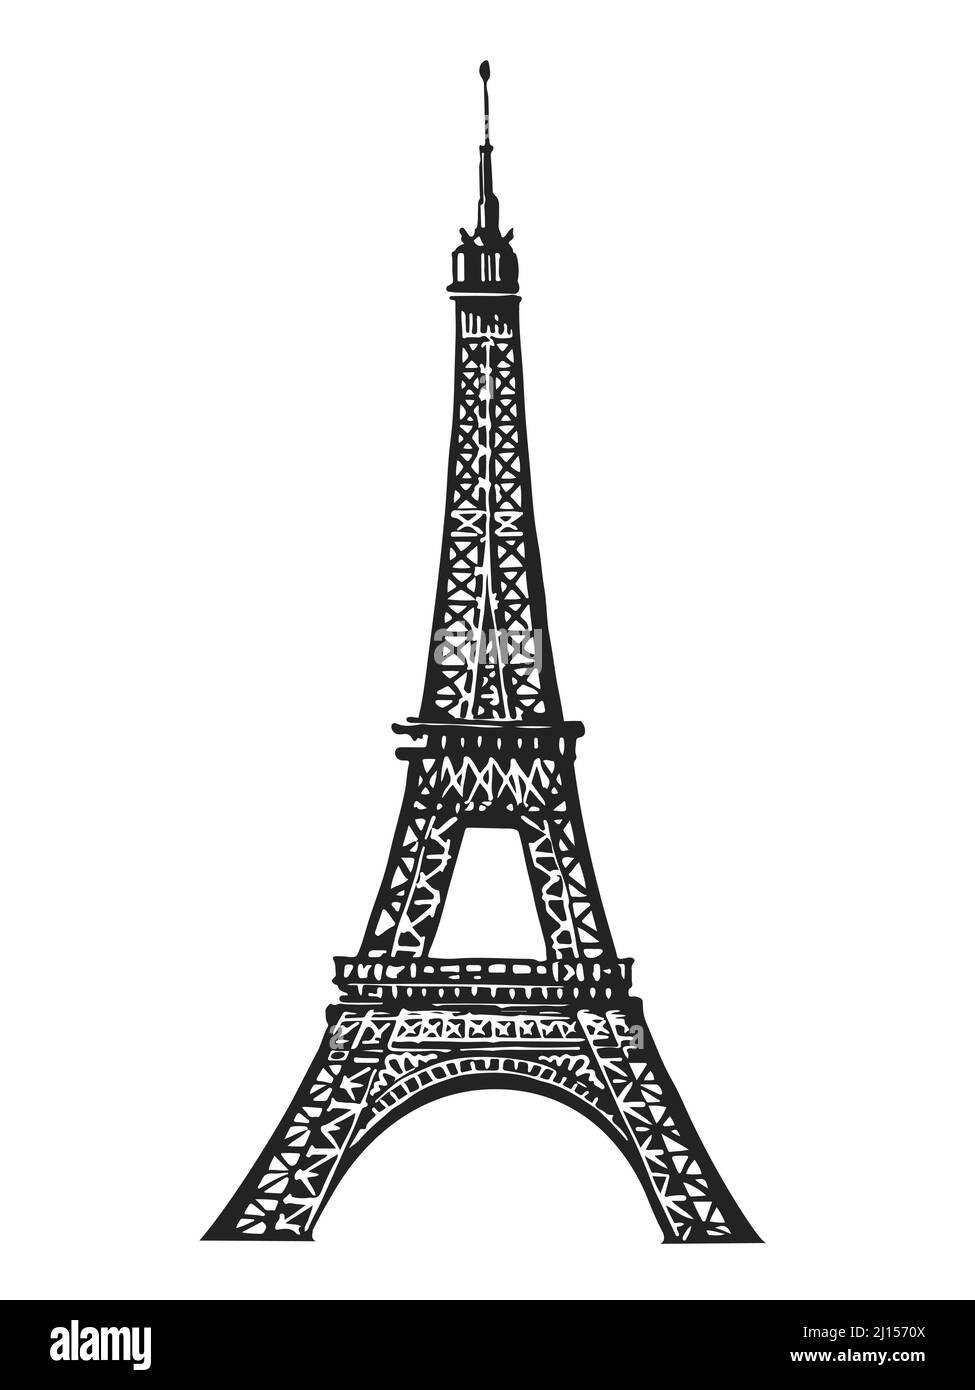 Französische Eiffelturm Skizze Gravur Vektor Illustration. Frankreich, Paris Symbol handgezeichnetes Bild Stock Vektor